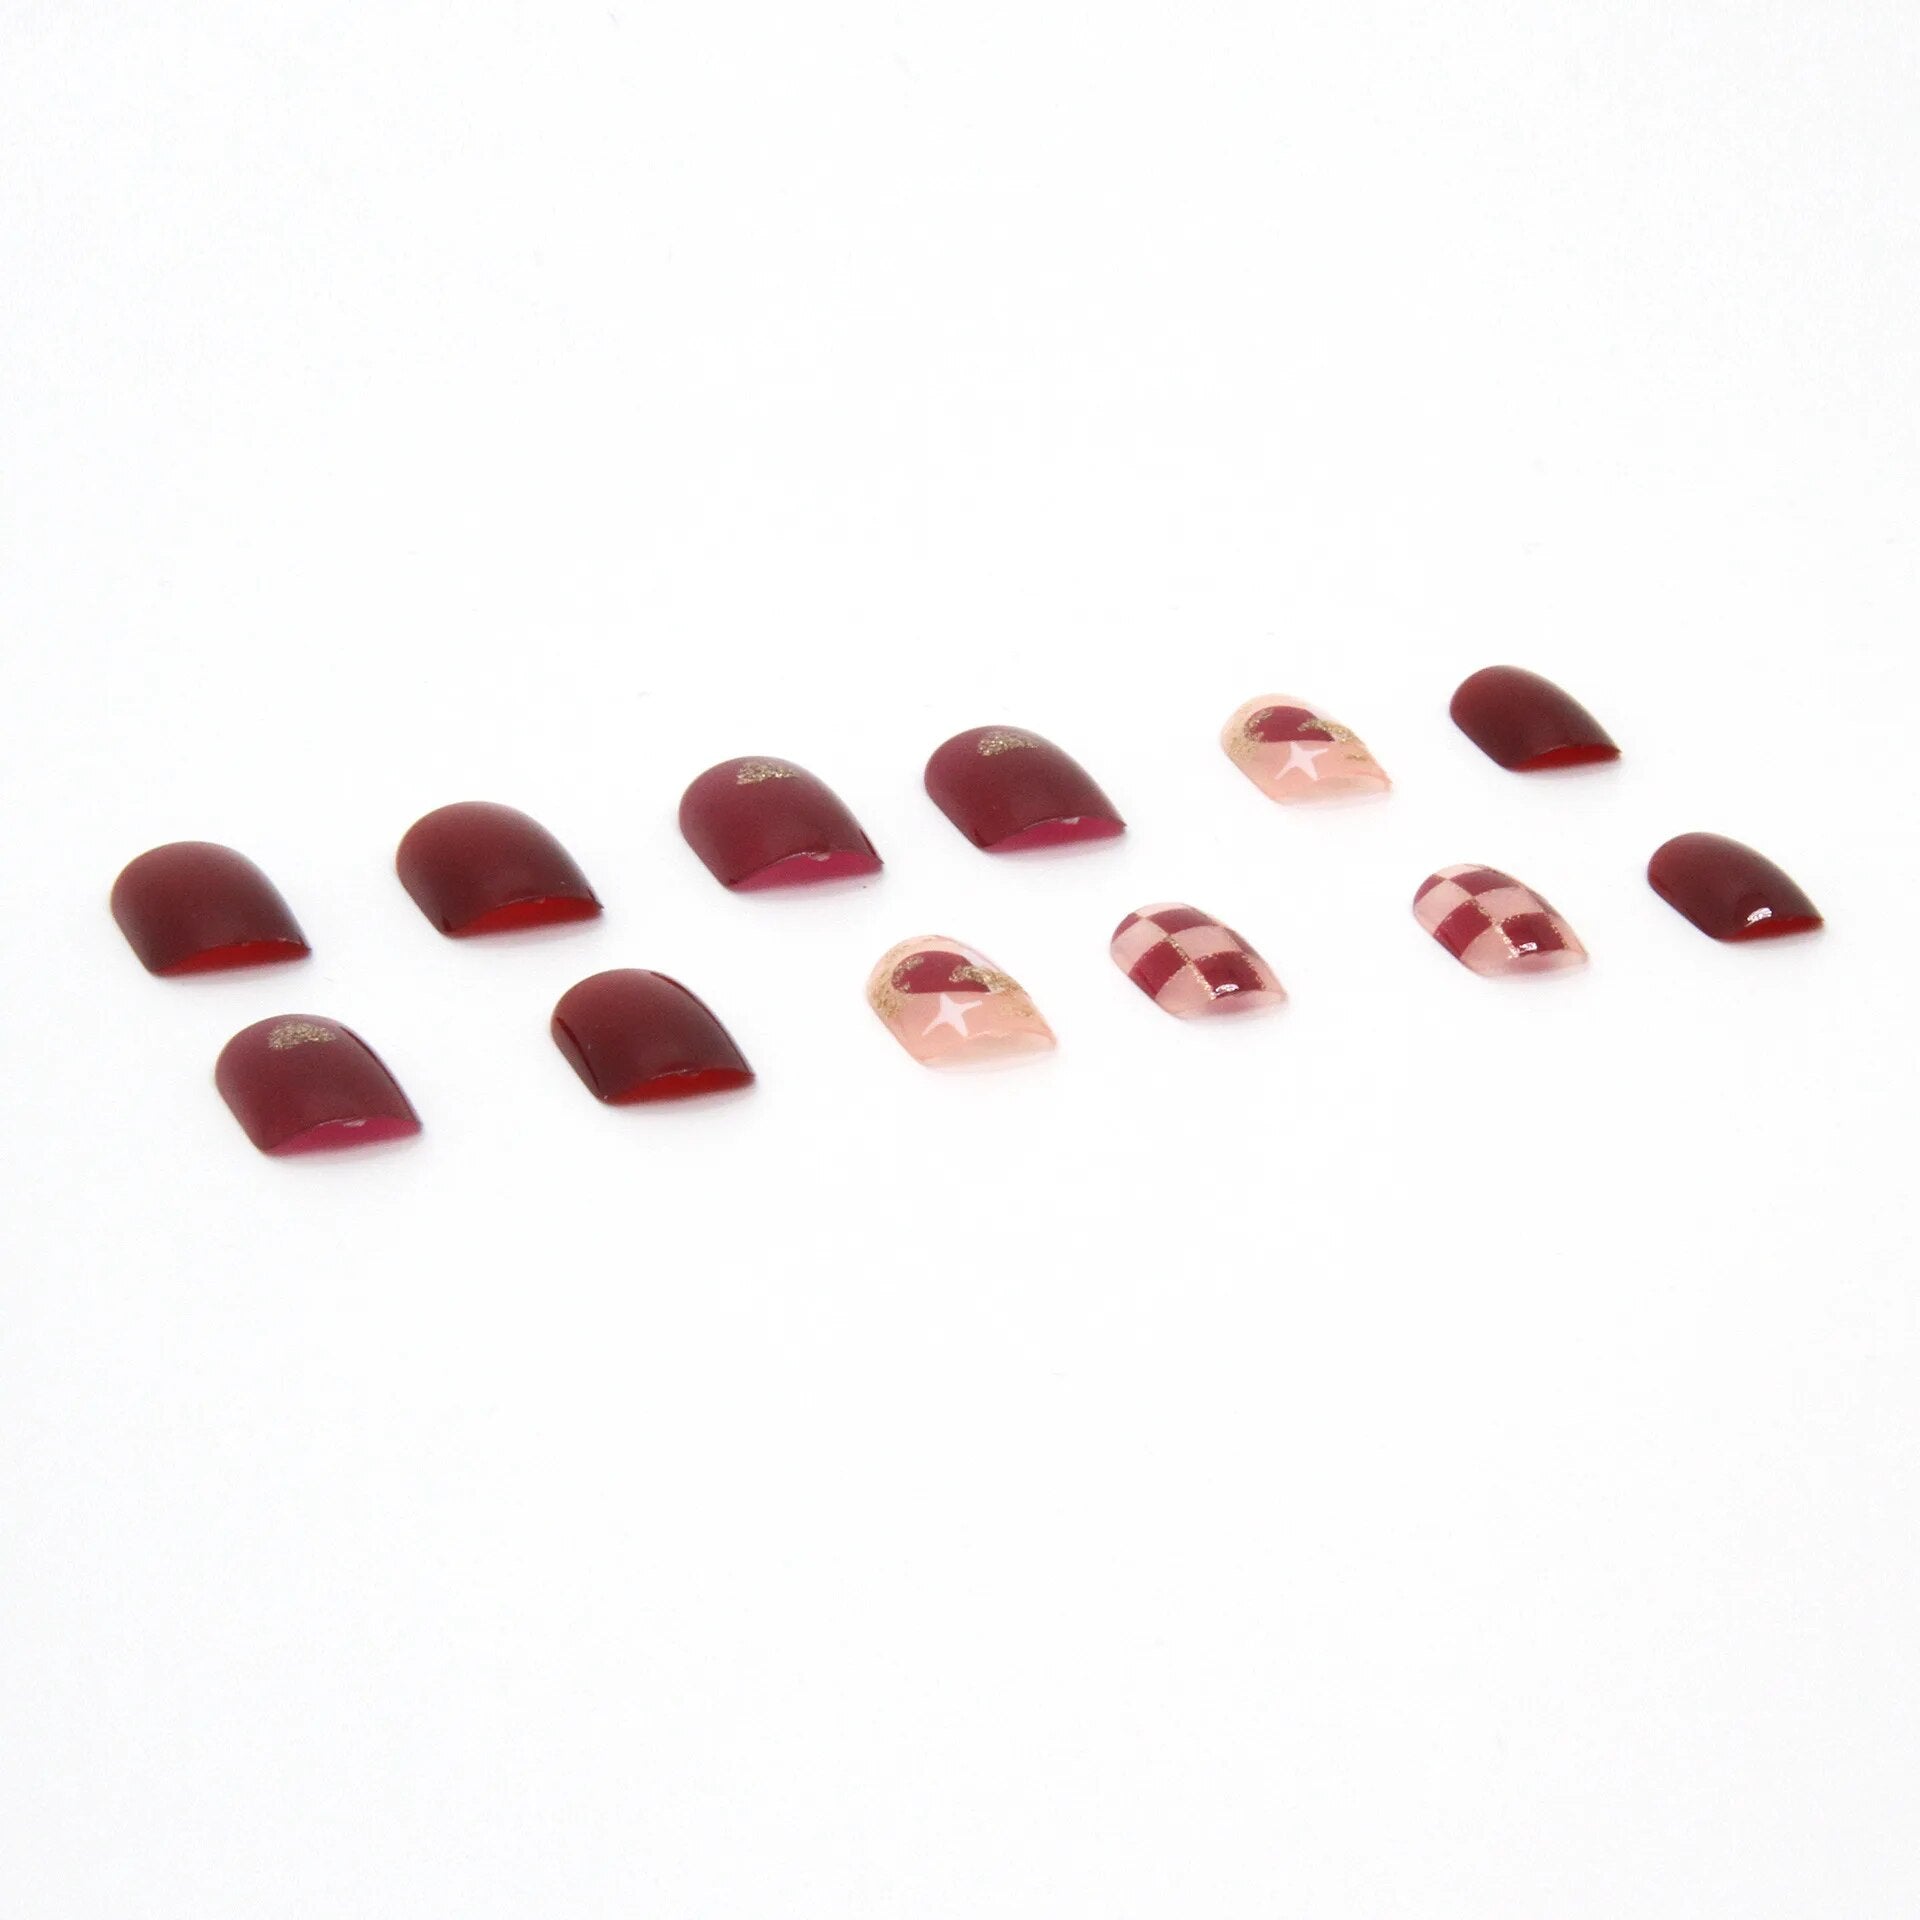 Aovica- Wine Red Checkerboard Fake Nails Art Nail Tips Press on False Nail Set Full Cover Artificial Short Head 24pcs/pack